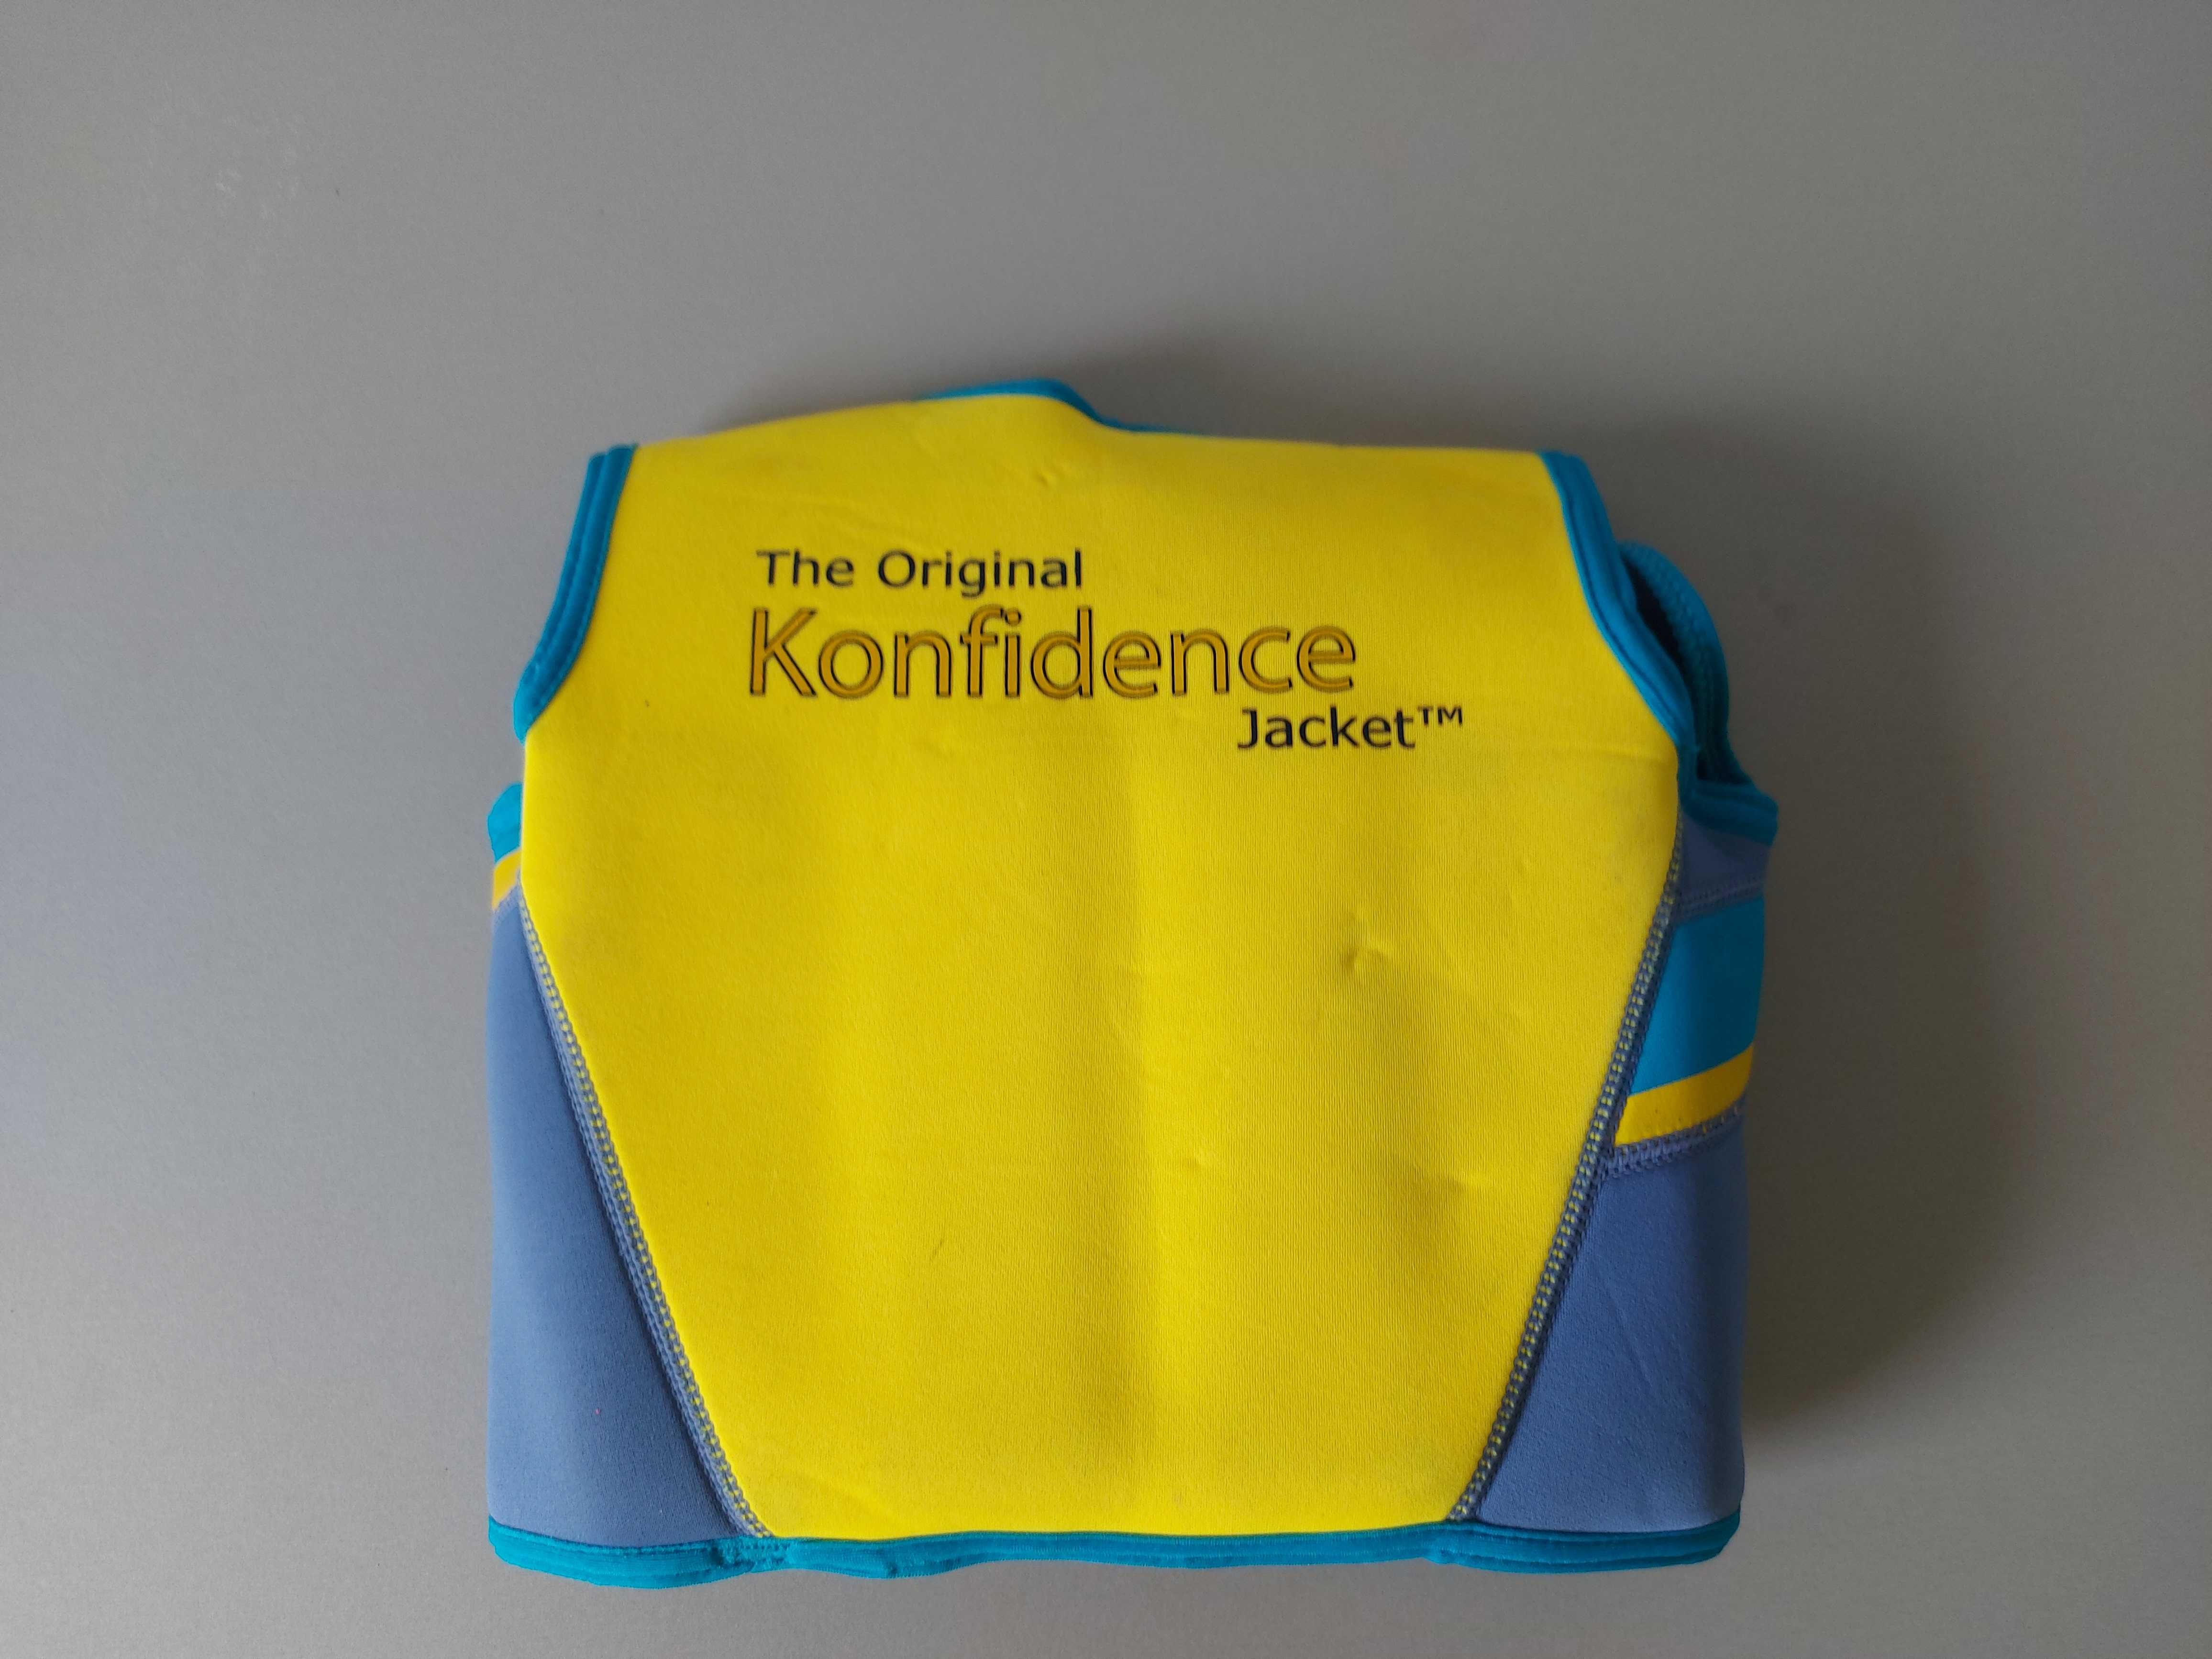 Kamizelka do nauki pływania - The Original Konfidence Jacket